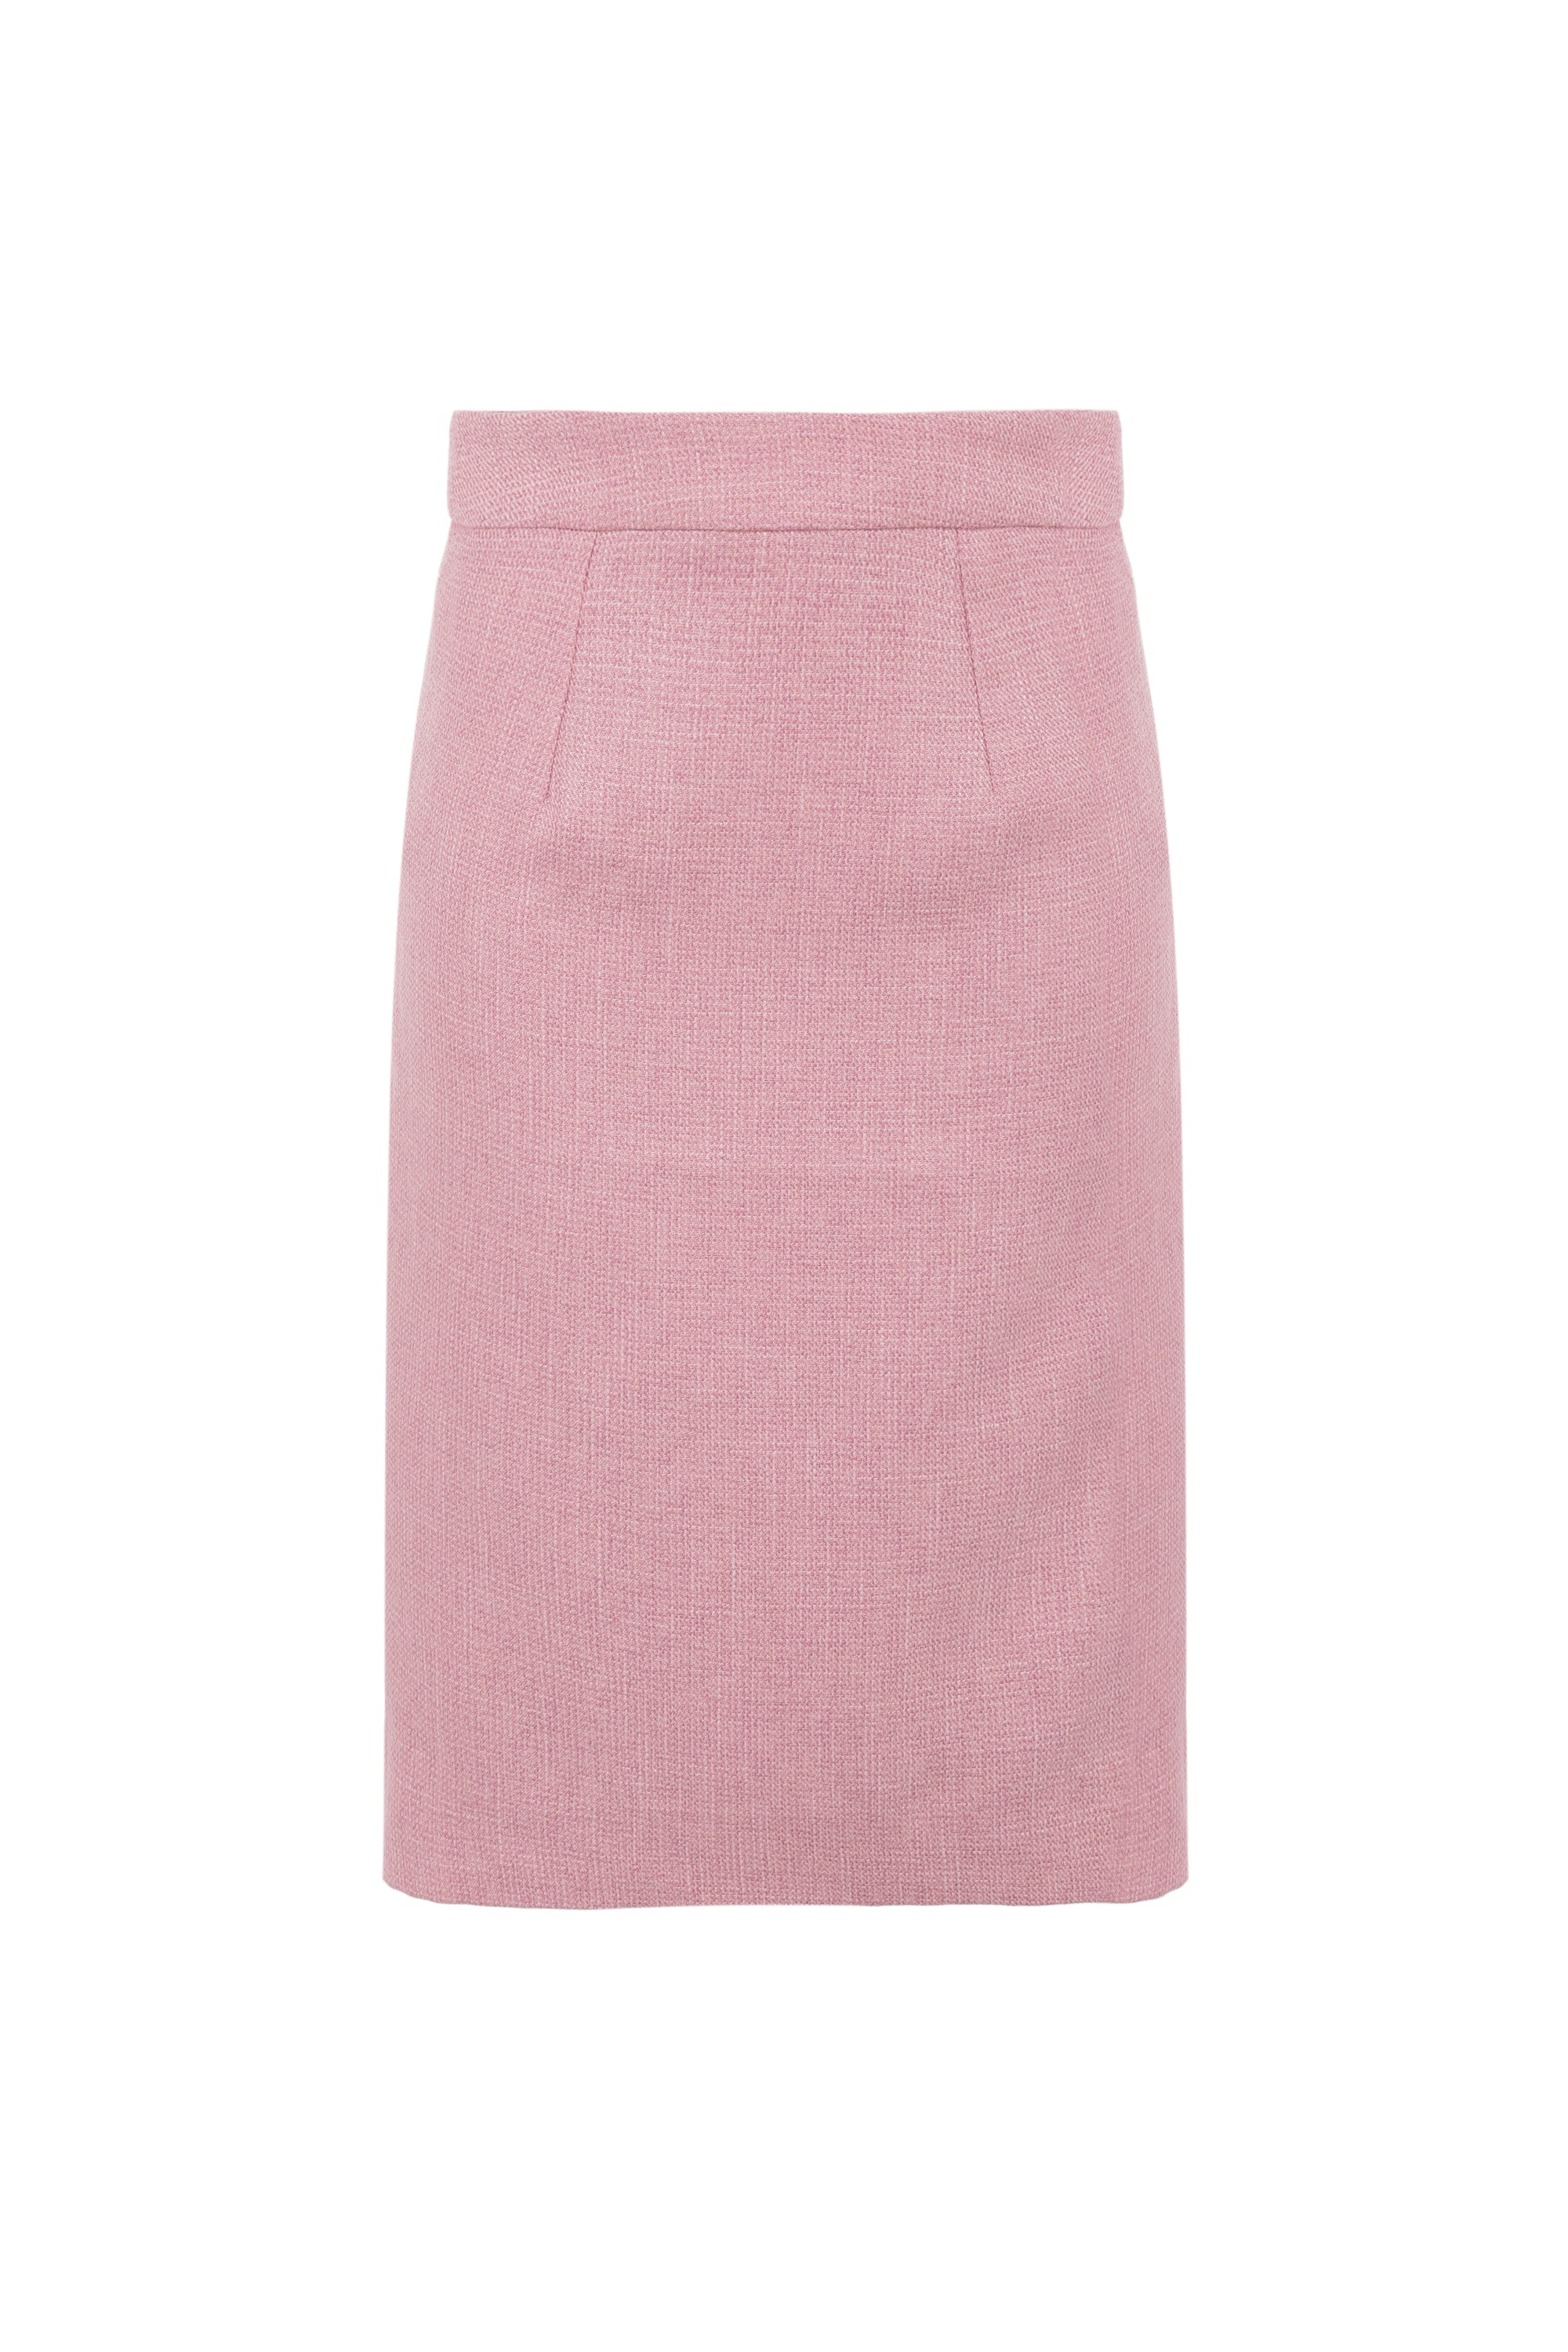 Midi-length skirt in pink tweed